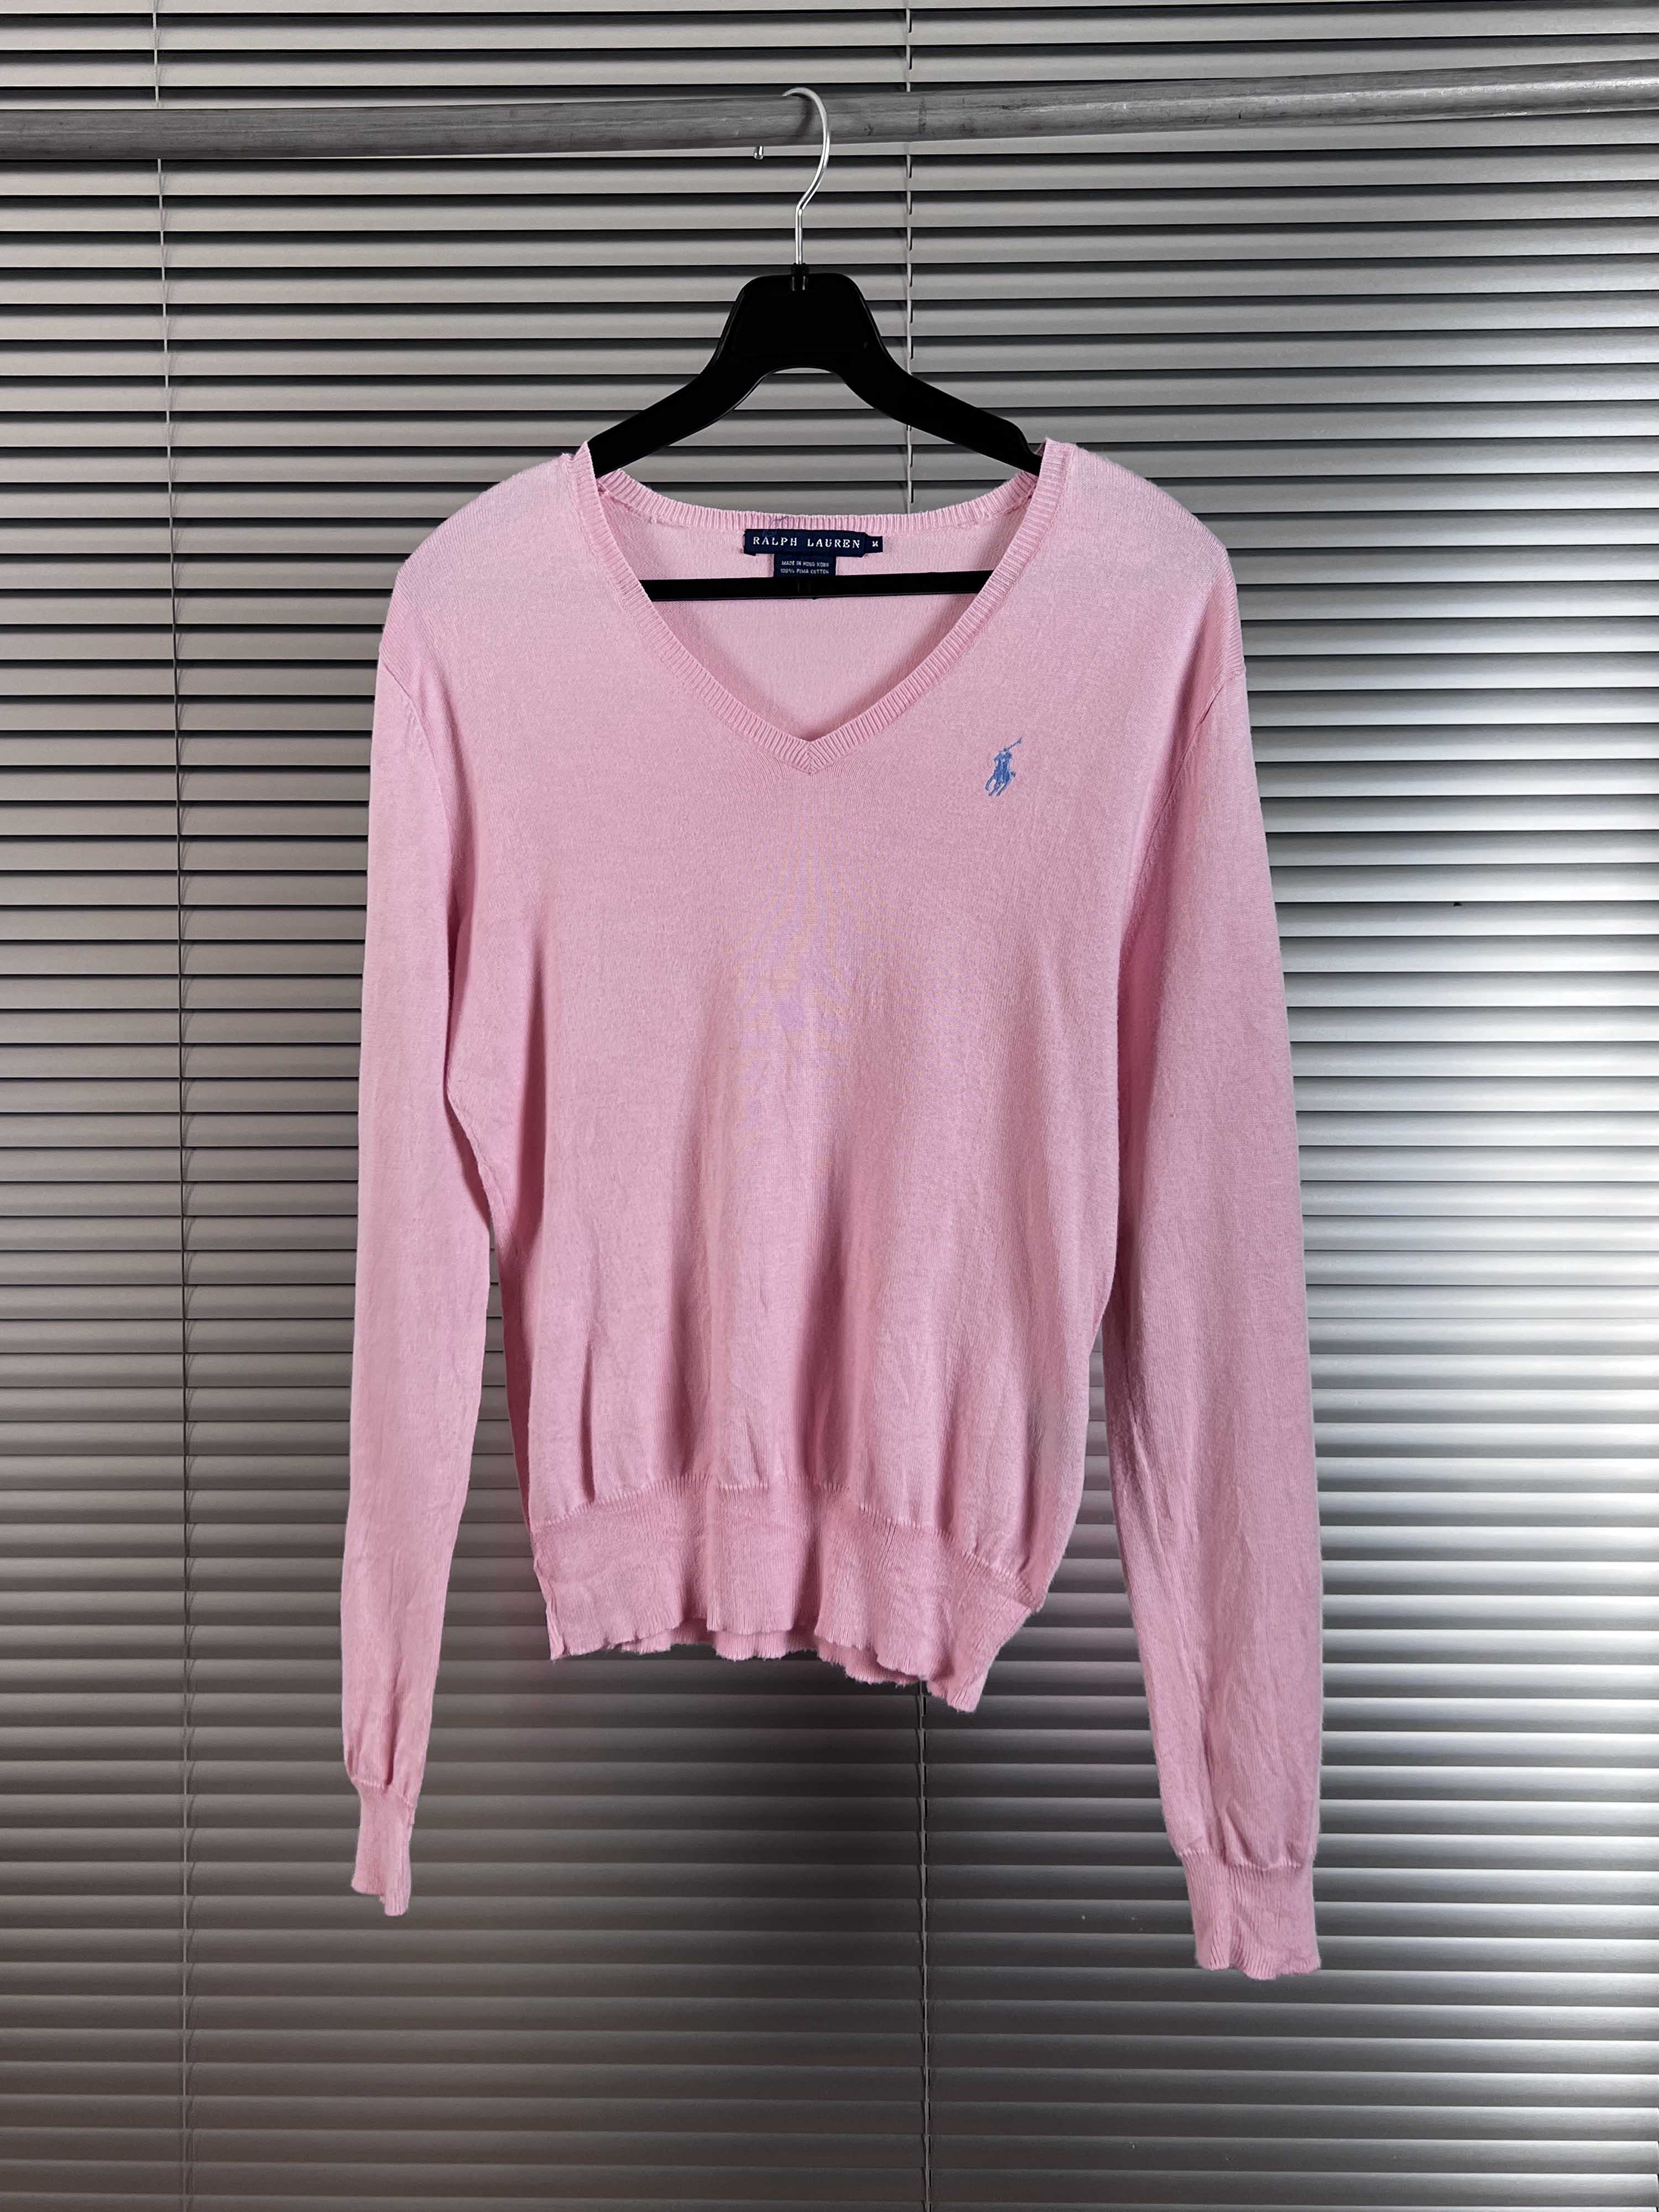 ralph lauren pink knit